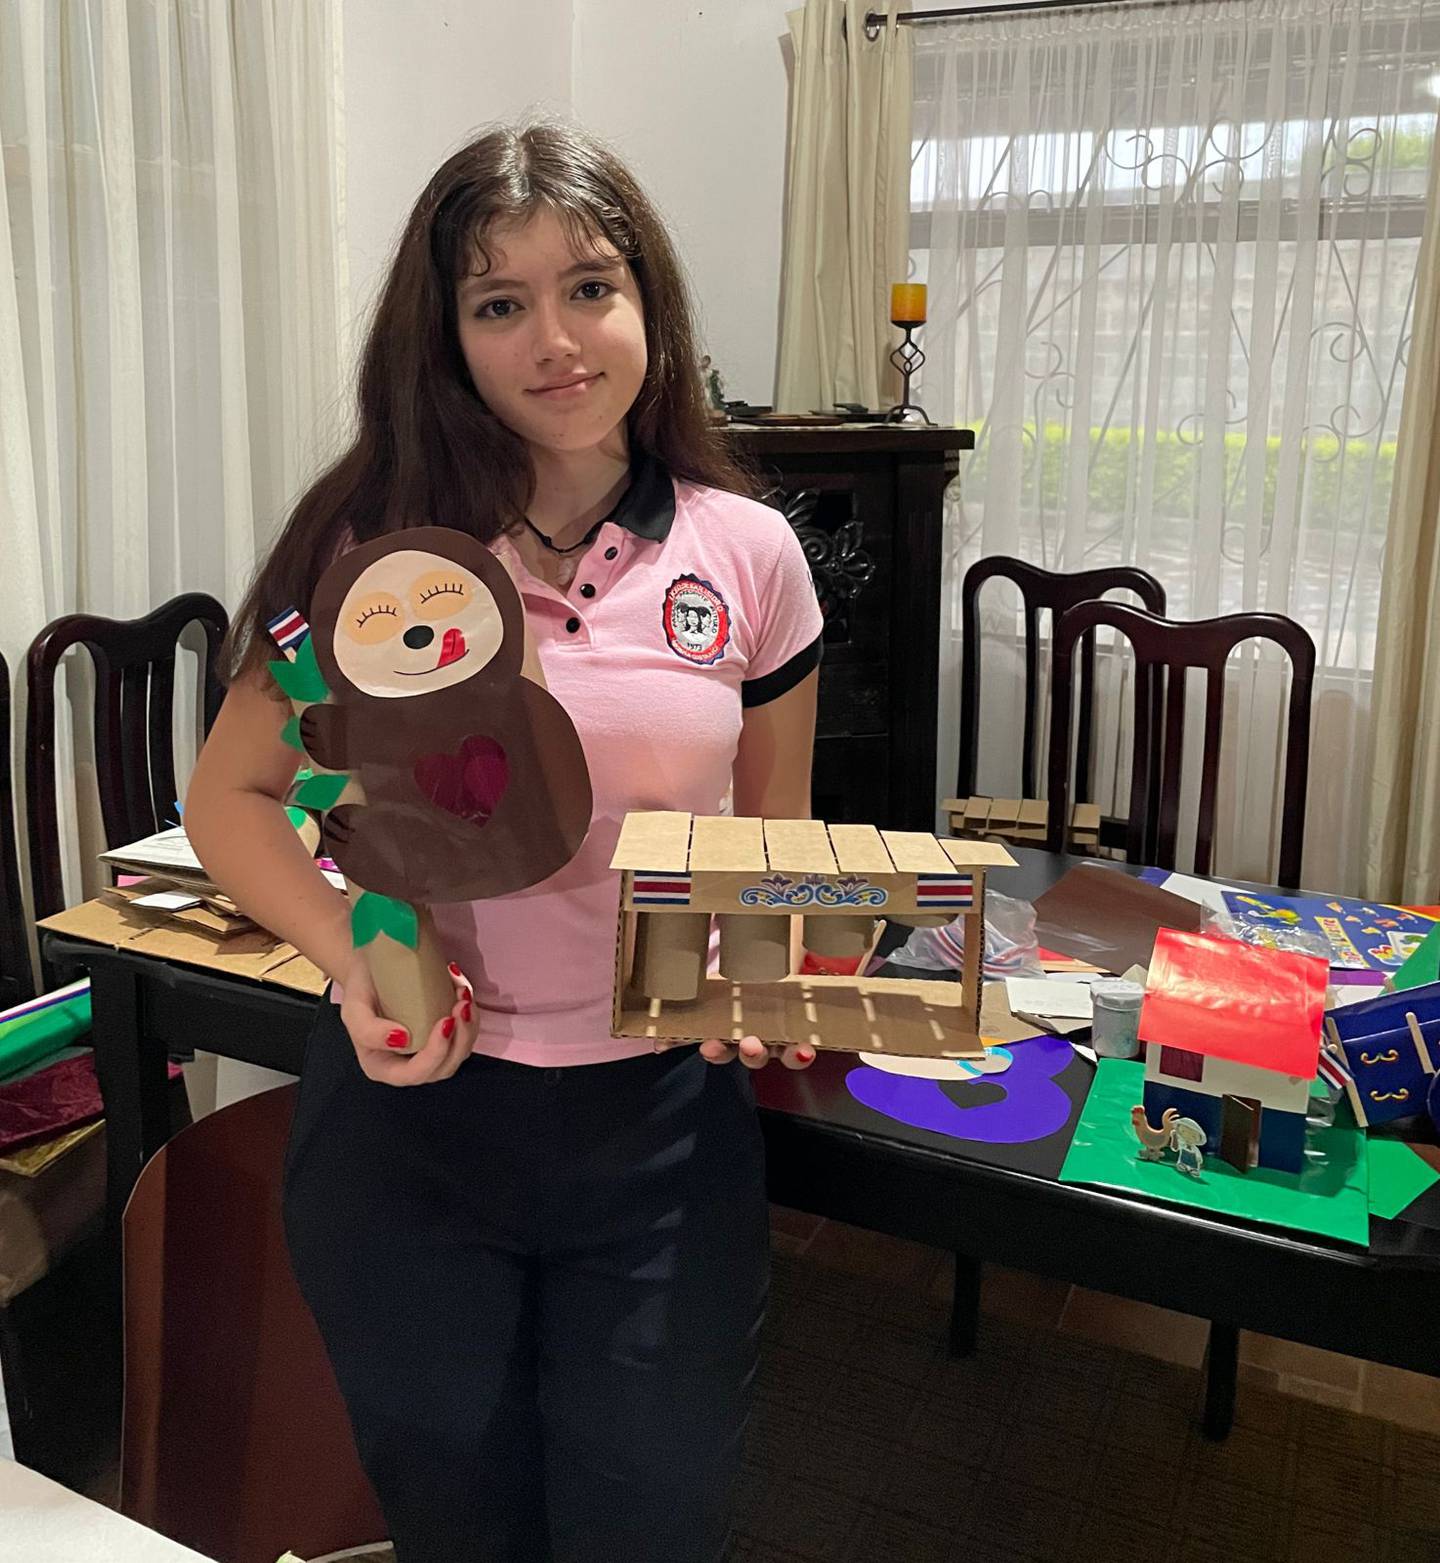 Tamara Córdoba Paniagua tiene 17 años, está en quinto de colegio y prácticamente nació emprendedora porque nunca se queda quedita, siempre tiene que estar inventando algo para ayudar con platica en la casa